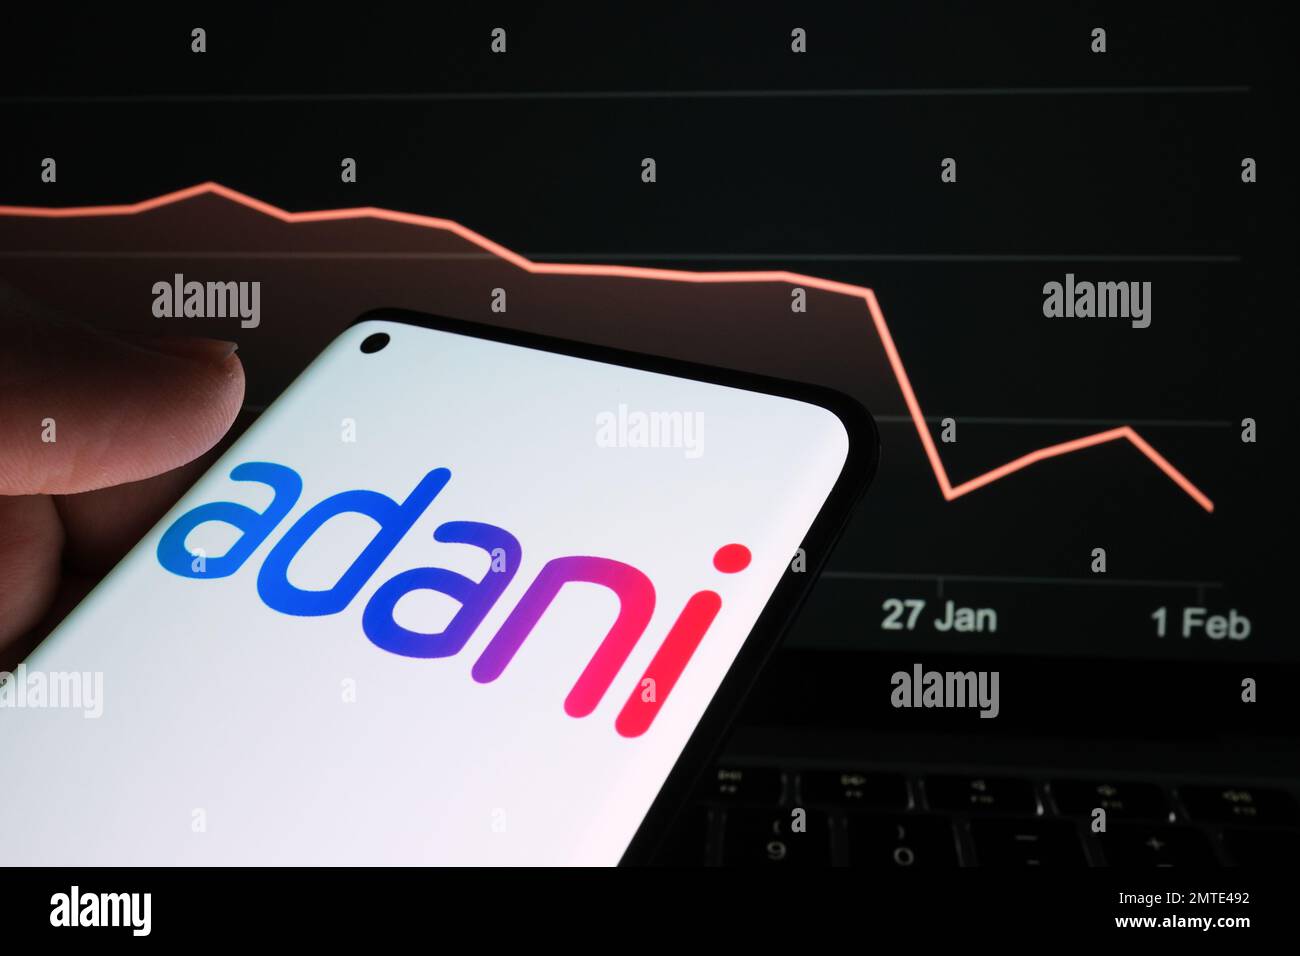 Logo der Adani Group auf dem Smartphone-Bildschirm und Diagramm des Aktienkurses des Unternehmens auf unscharfem Hintergrund. Reales Aktiendiagramm für einen Monat Stockfoto